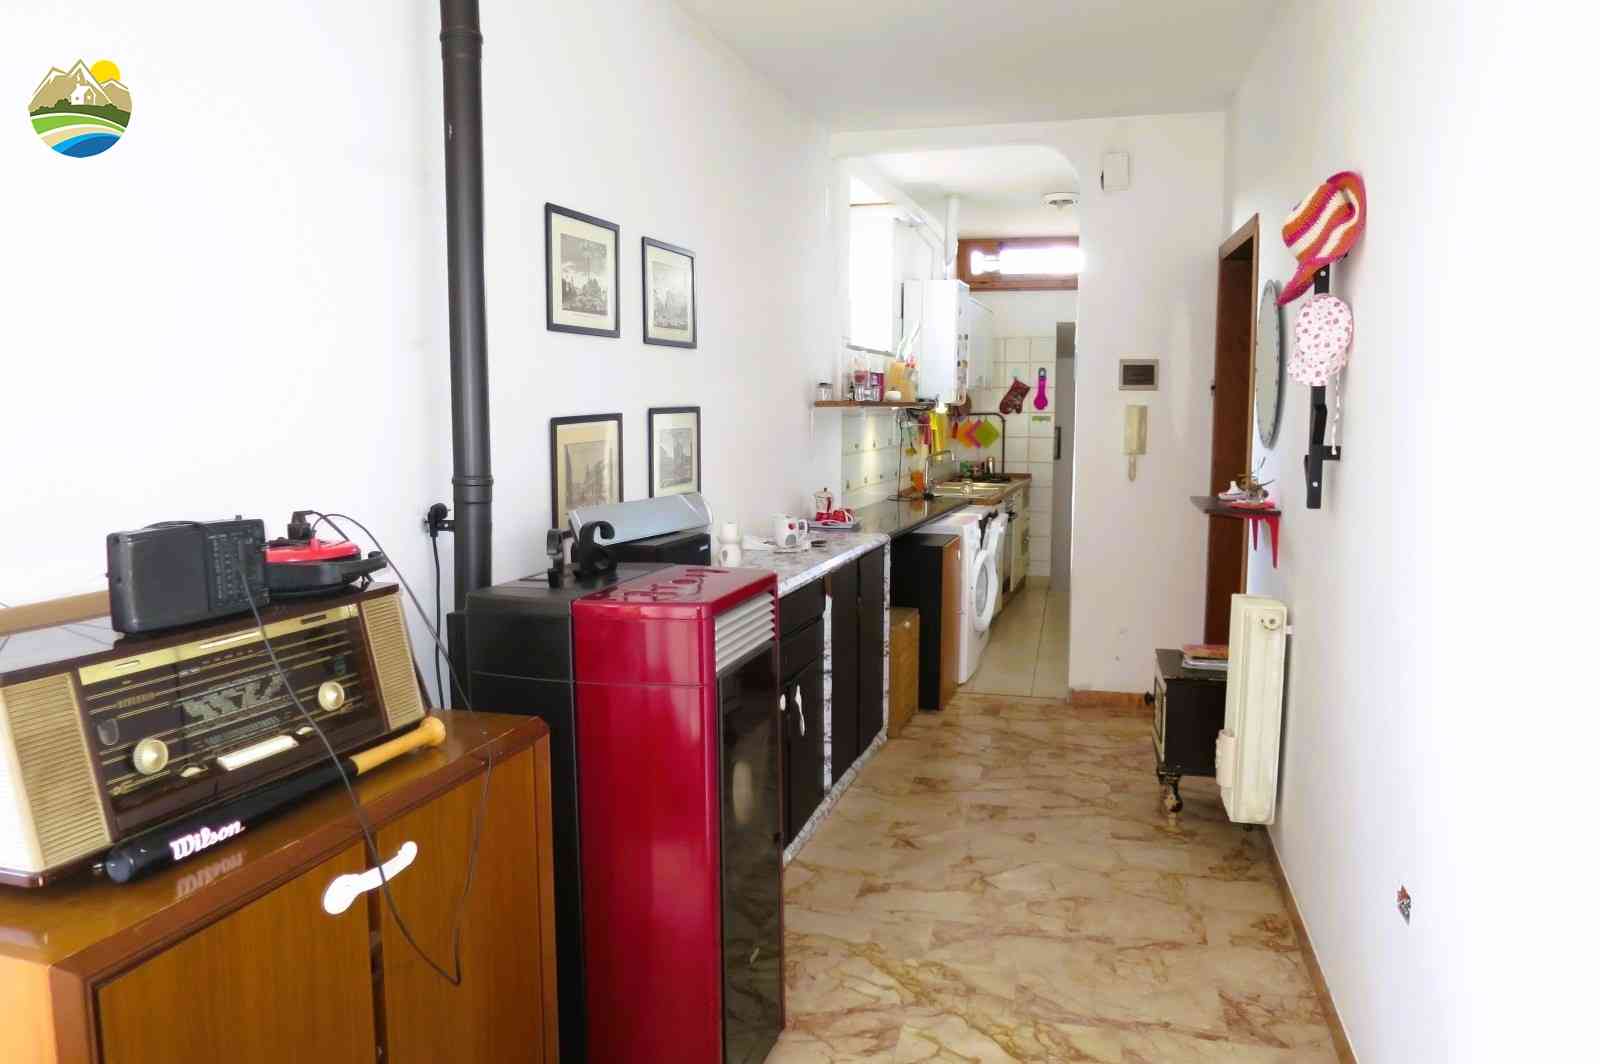 Casa in paese Casa in paese in vendita Pineto (TE), Appartamento del Corso - Pineto - EUR 116.810 570